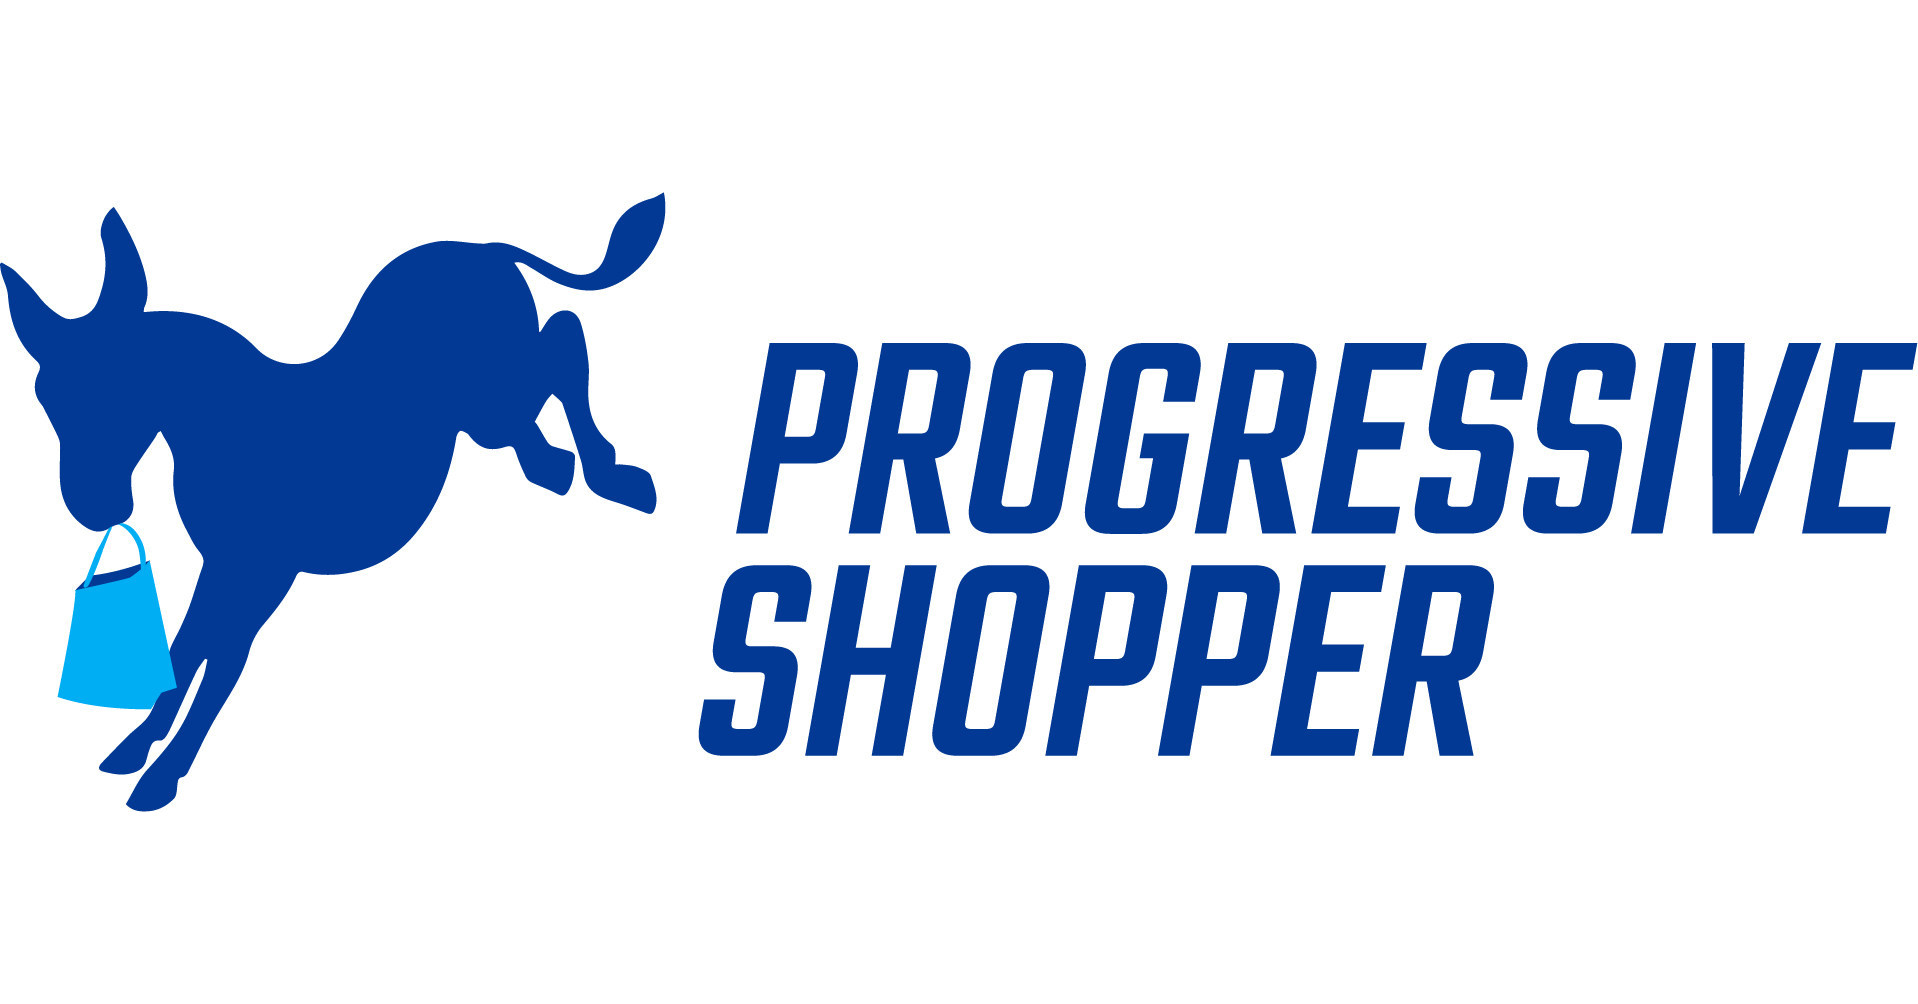 Progressive Shopper